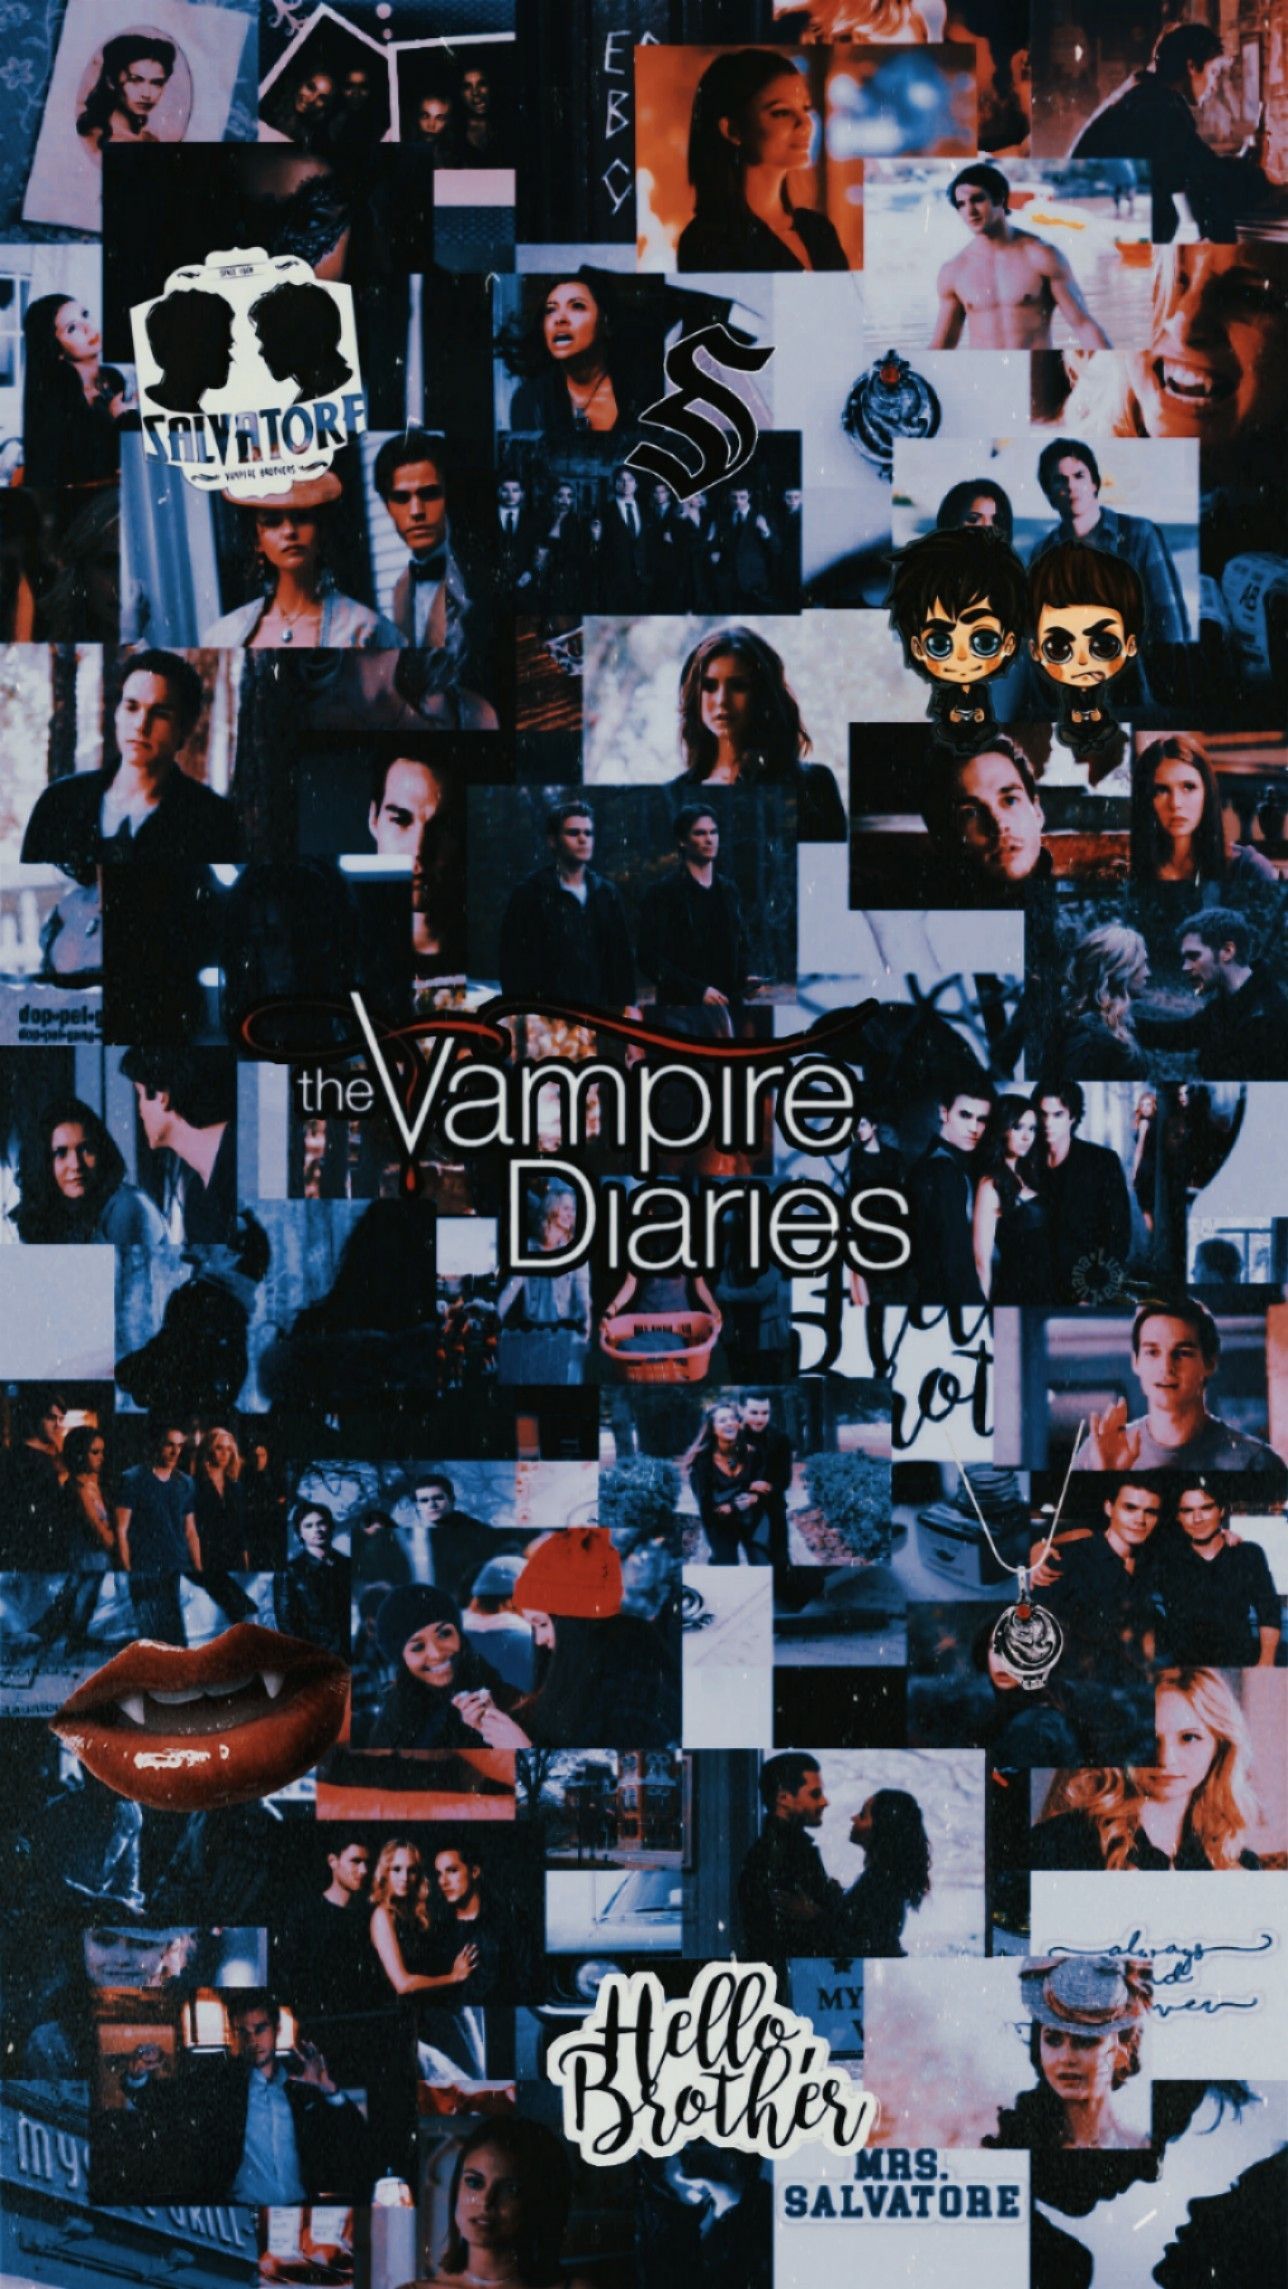 Lockscreen Wallpaper The Vampire Diaries. Vampire diaries wallpaper, Vampire diaries poster, Vampire diaries funny